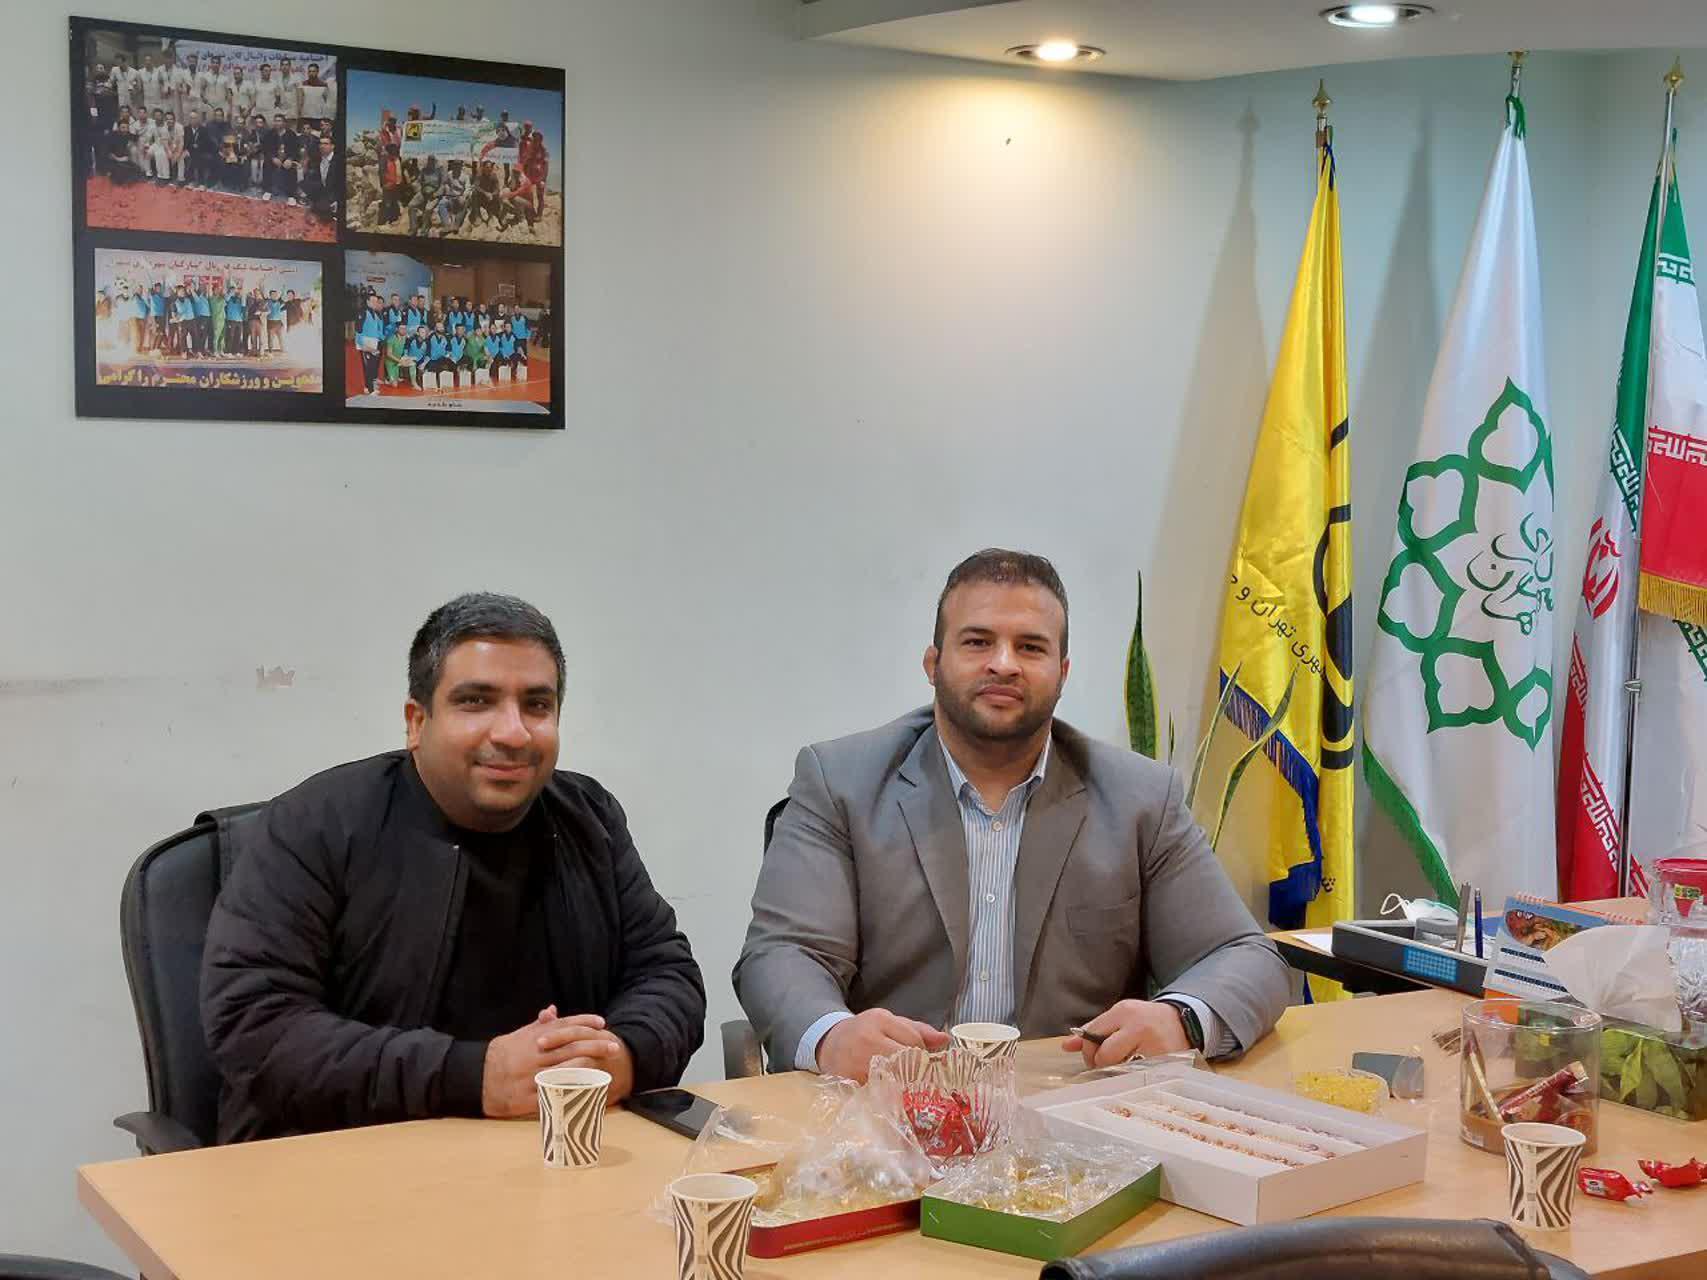 دیدار رئیس هیئت اسکواش جنوب شرق با مدیر تربیت بدنی شرکت مترو تهران